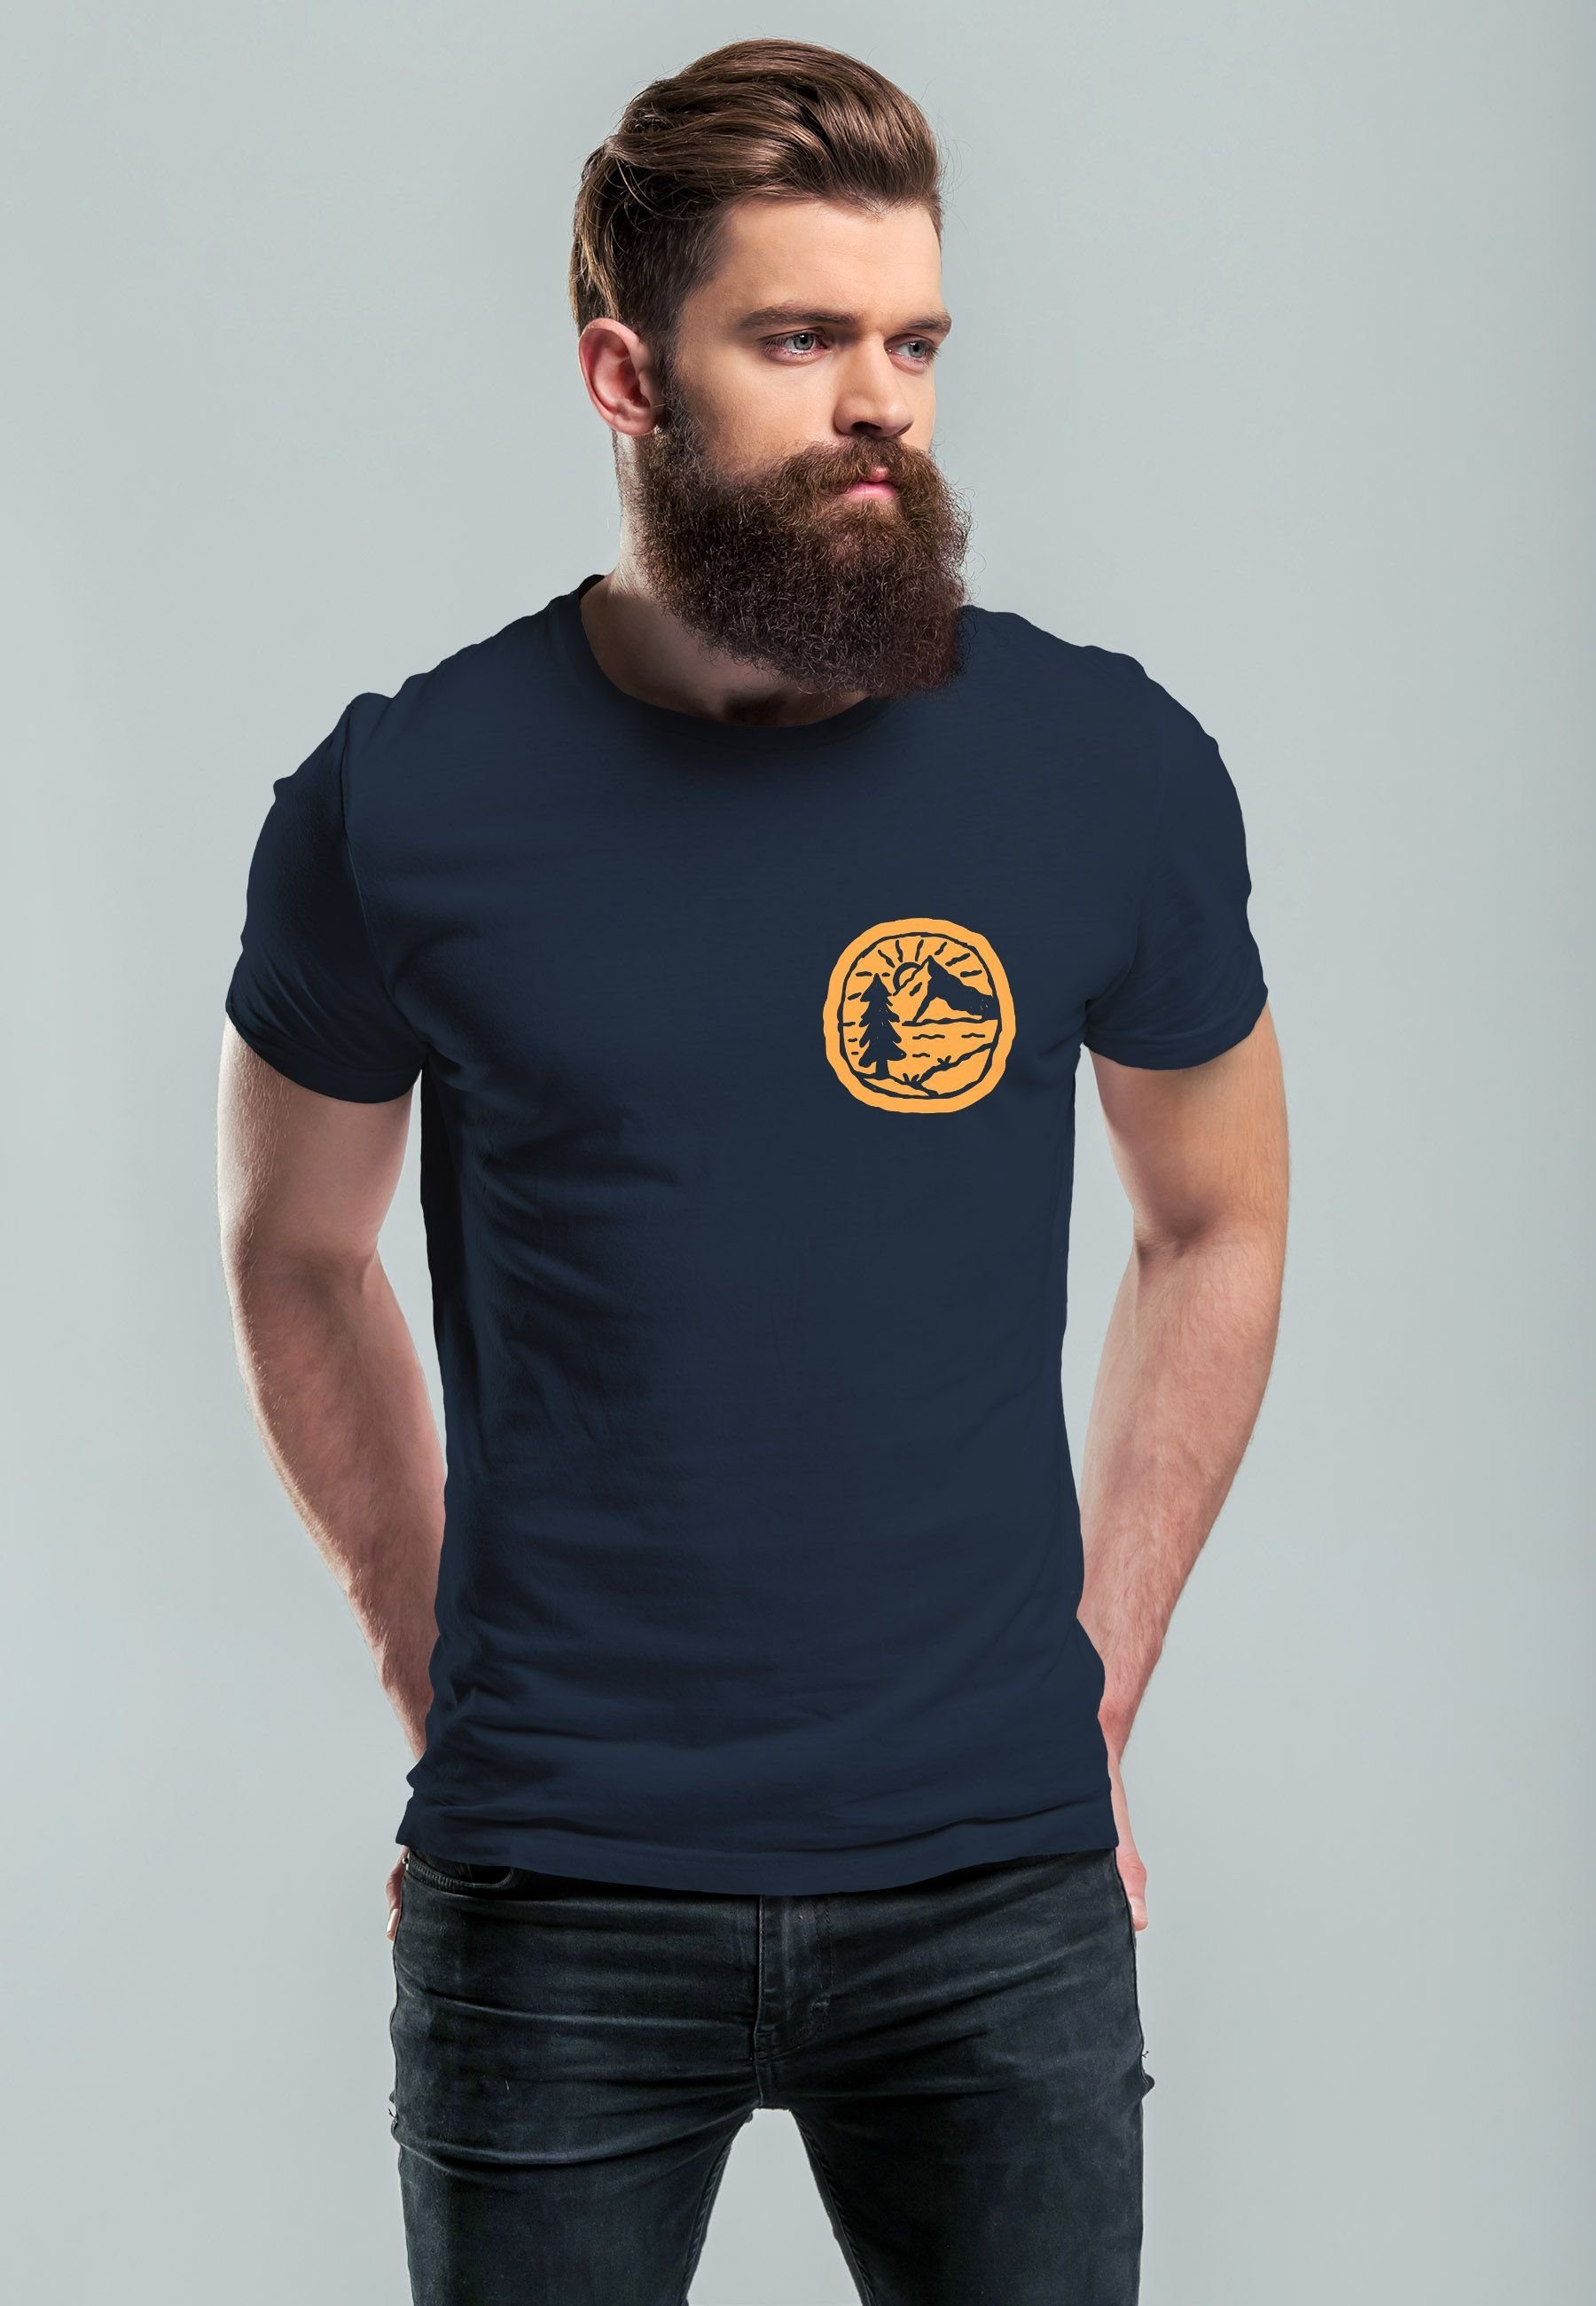 Neverless Print Wandern Print Logo T-Shirt Berge mit Outdoor Print-Shirt Badge navy Natur Herren Landschaft